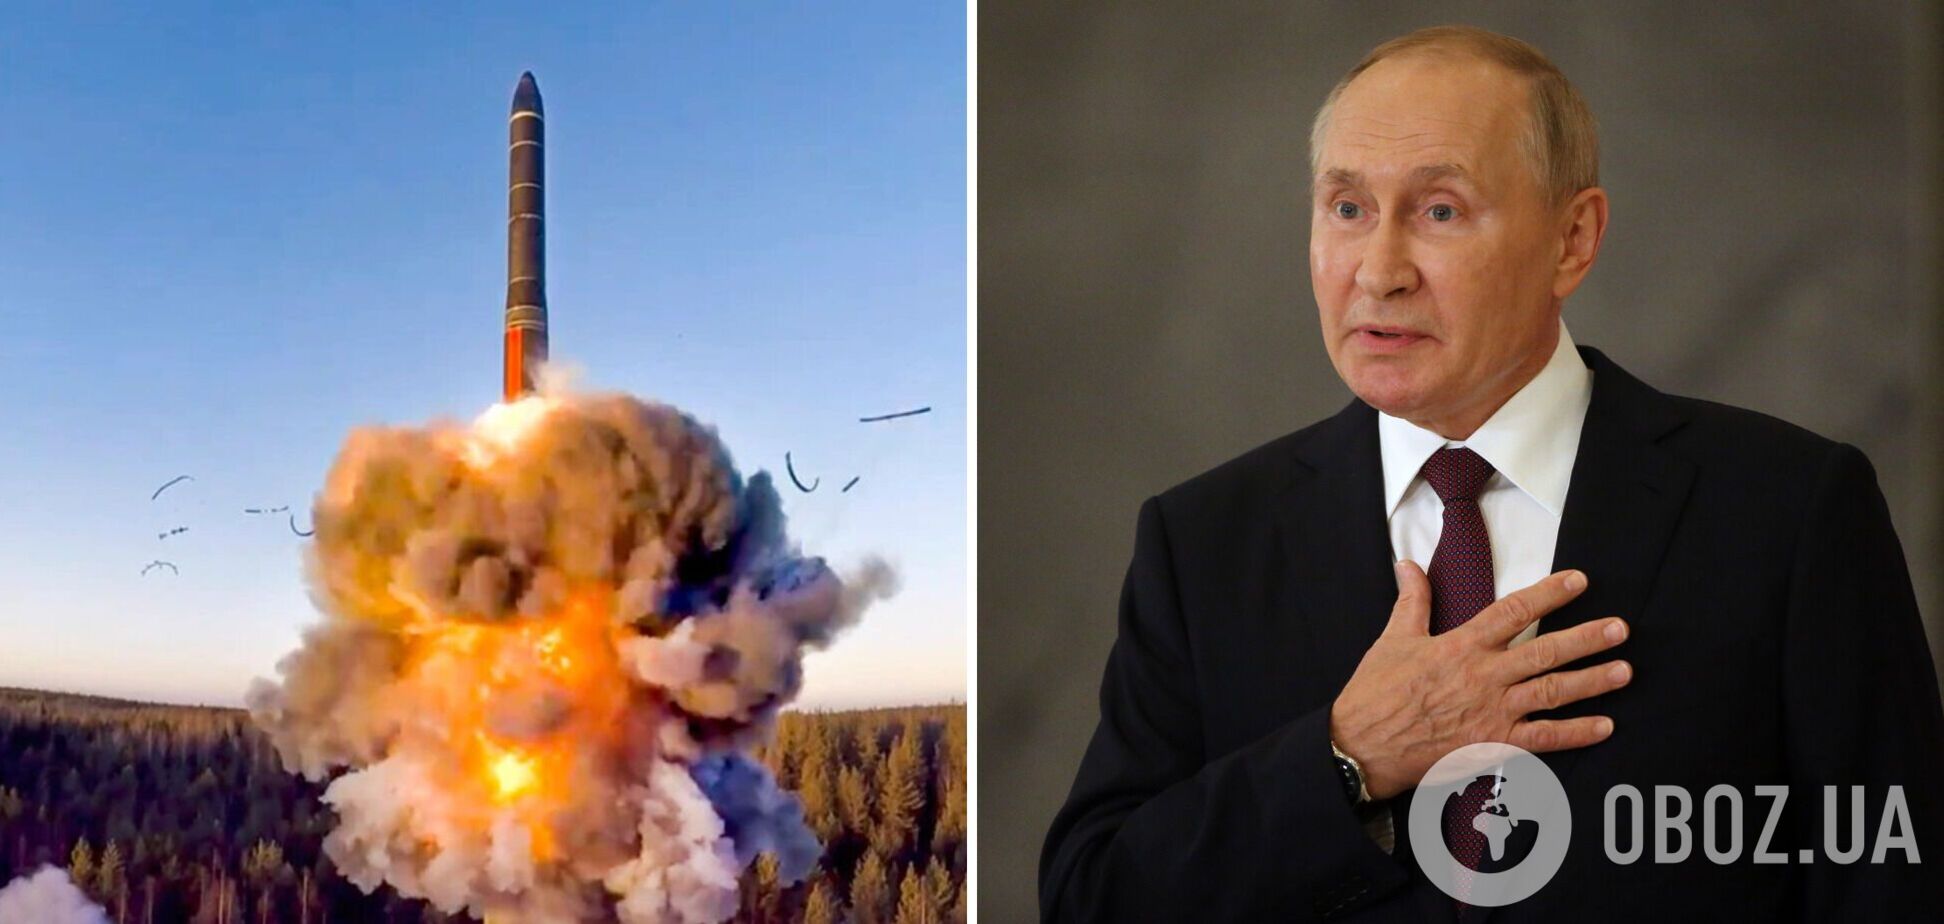 У Путина уже возможно и нет никакого ядерного оружия, — американский политик